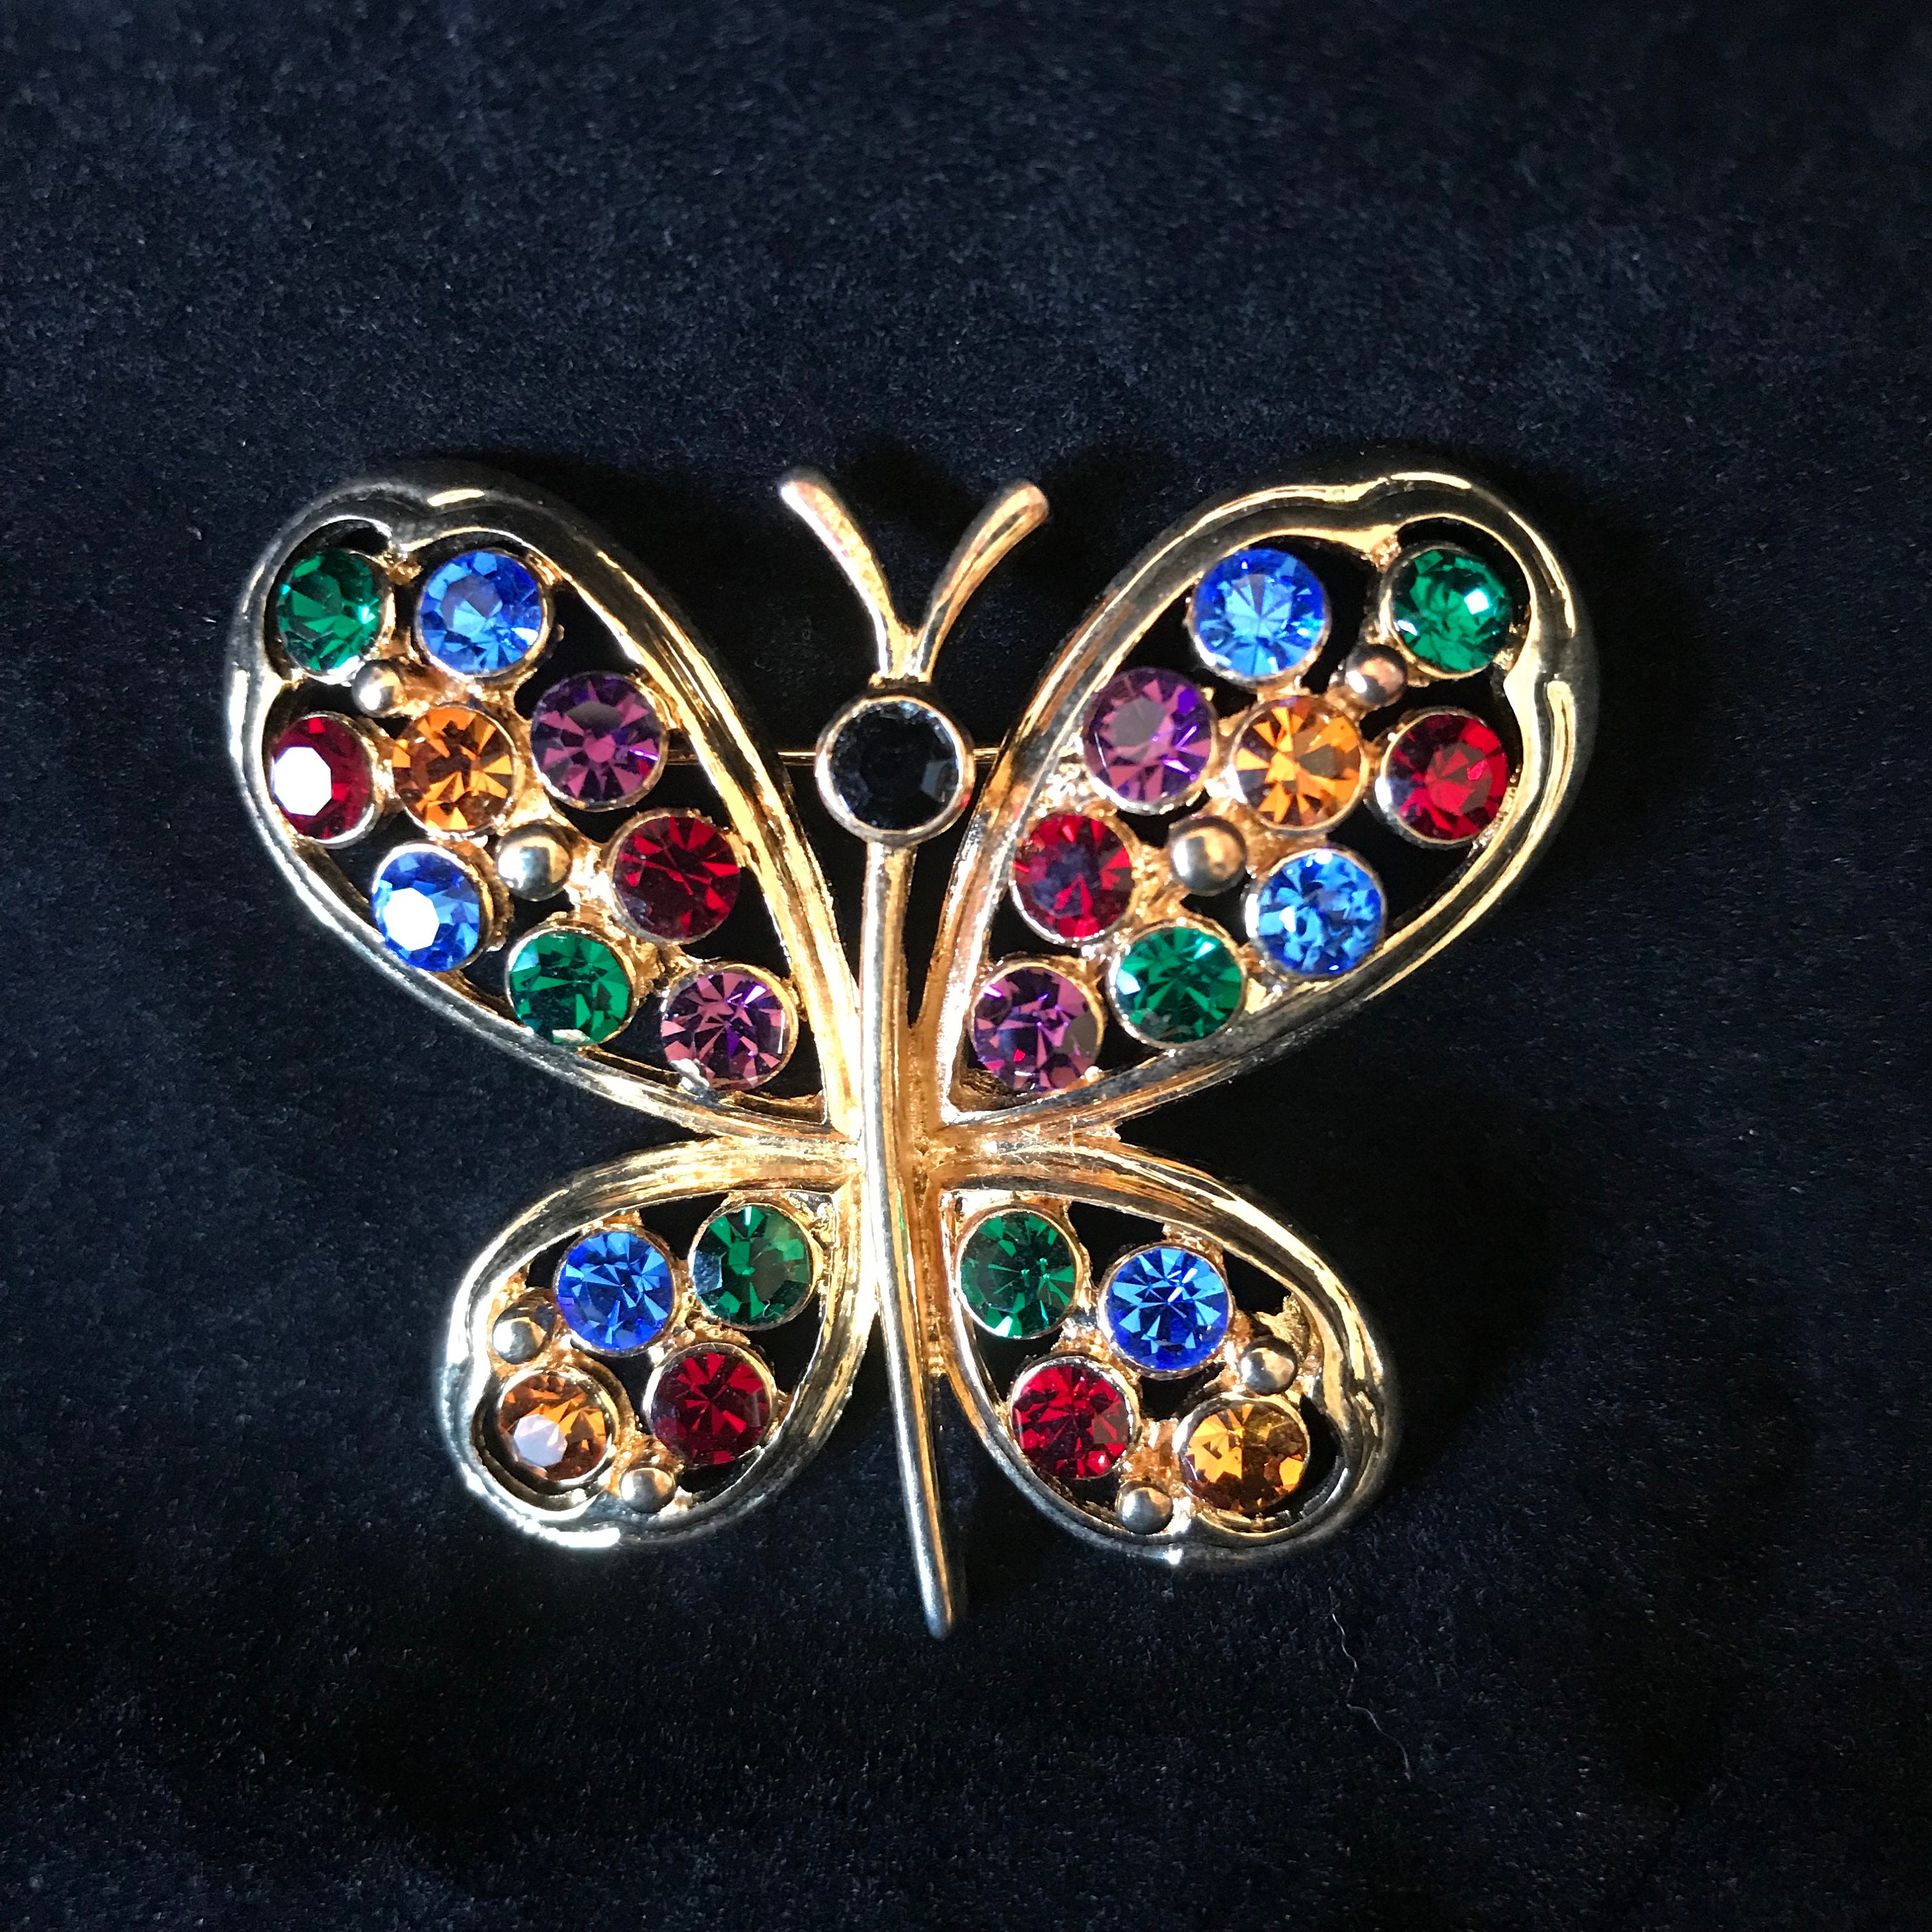 Butterfly multicolored rhinestone brooch